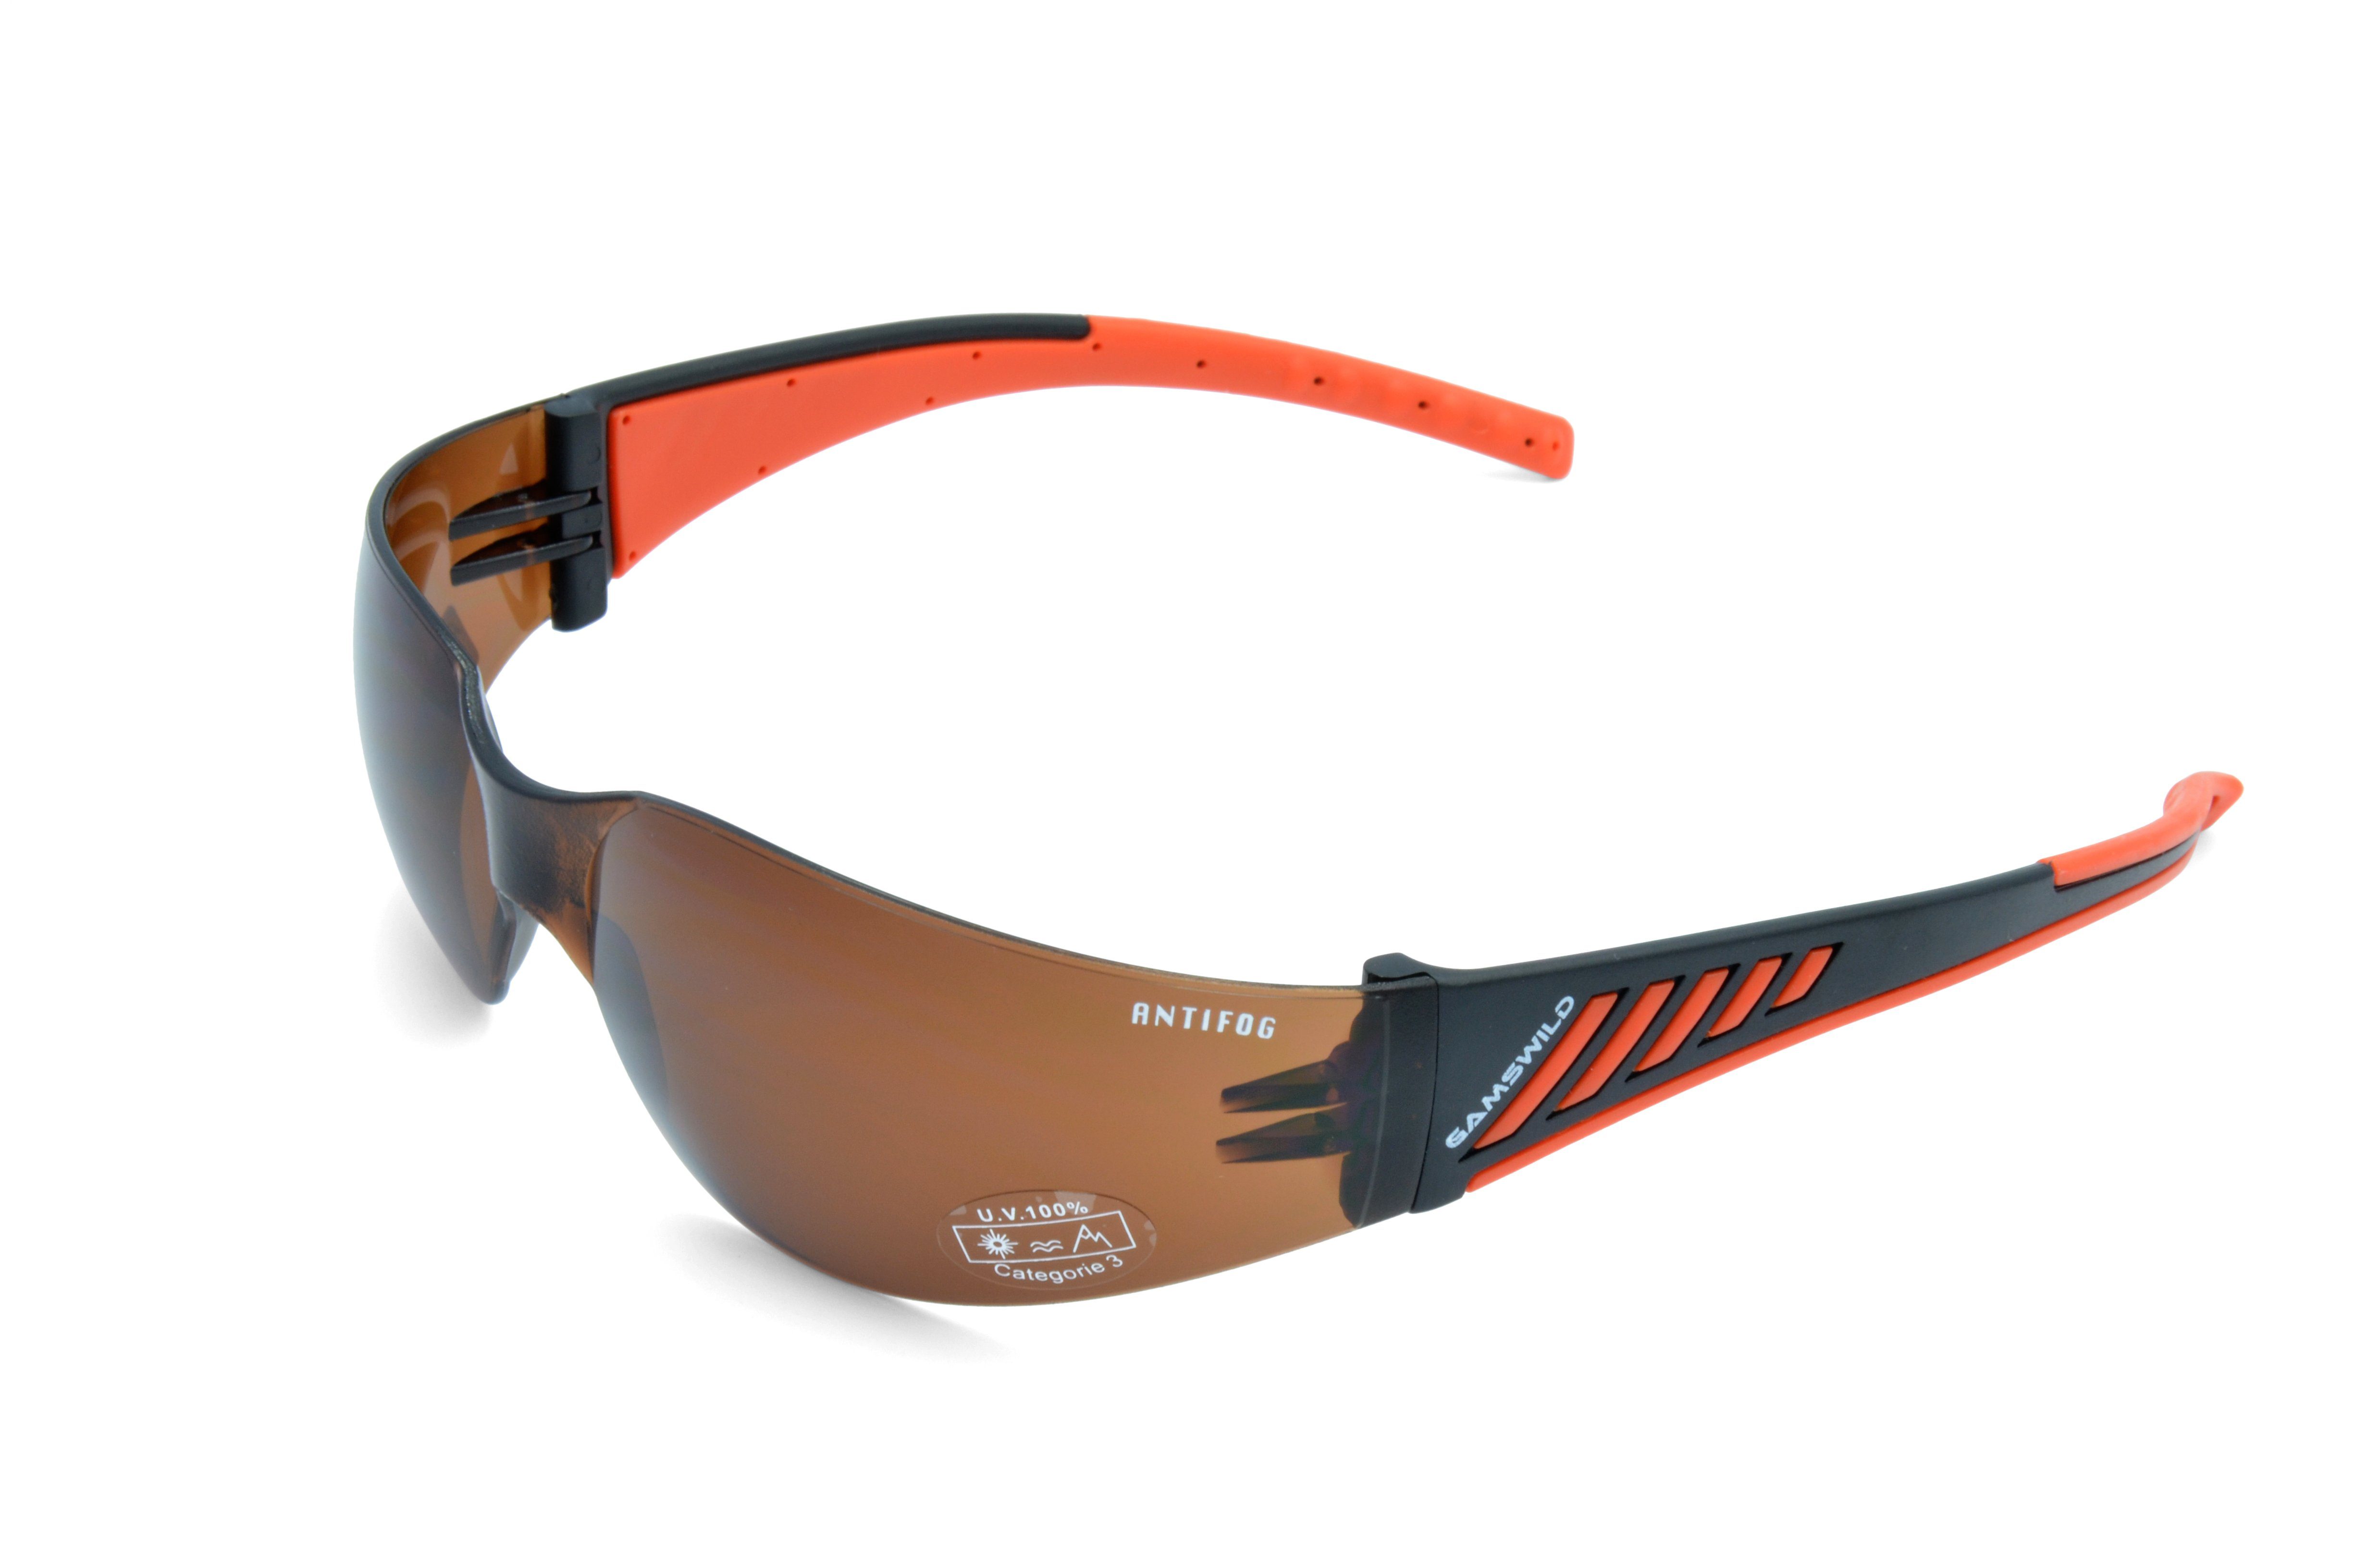 Gamswild Sportbrille WS7122 Sonnenbrille Damen Herren Fahrradbrille Skibrille Unisex, brau, grau, orange, ANTIFOG braun